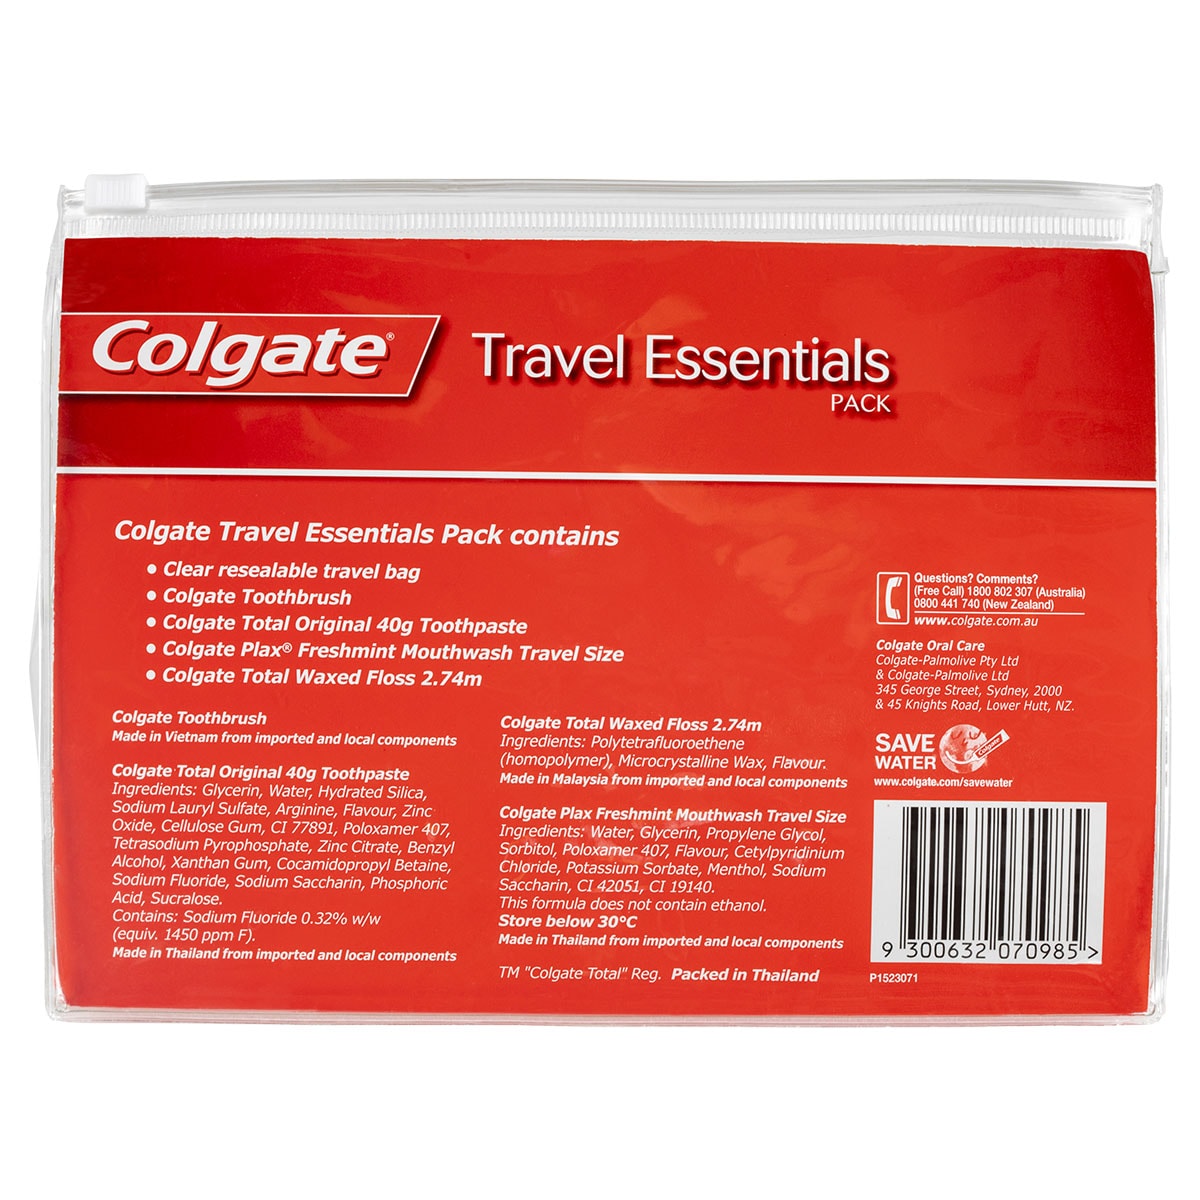 Colgate Travel Essentials Pack